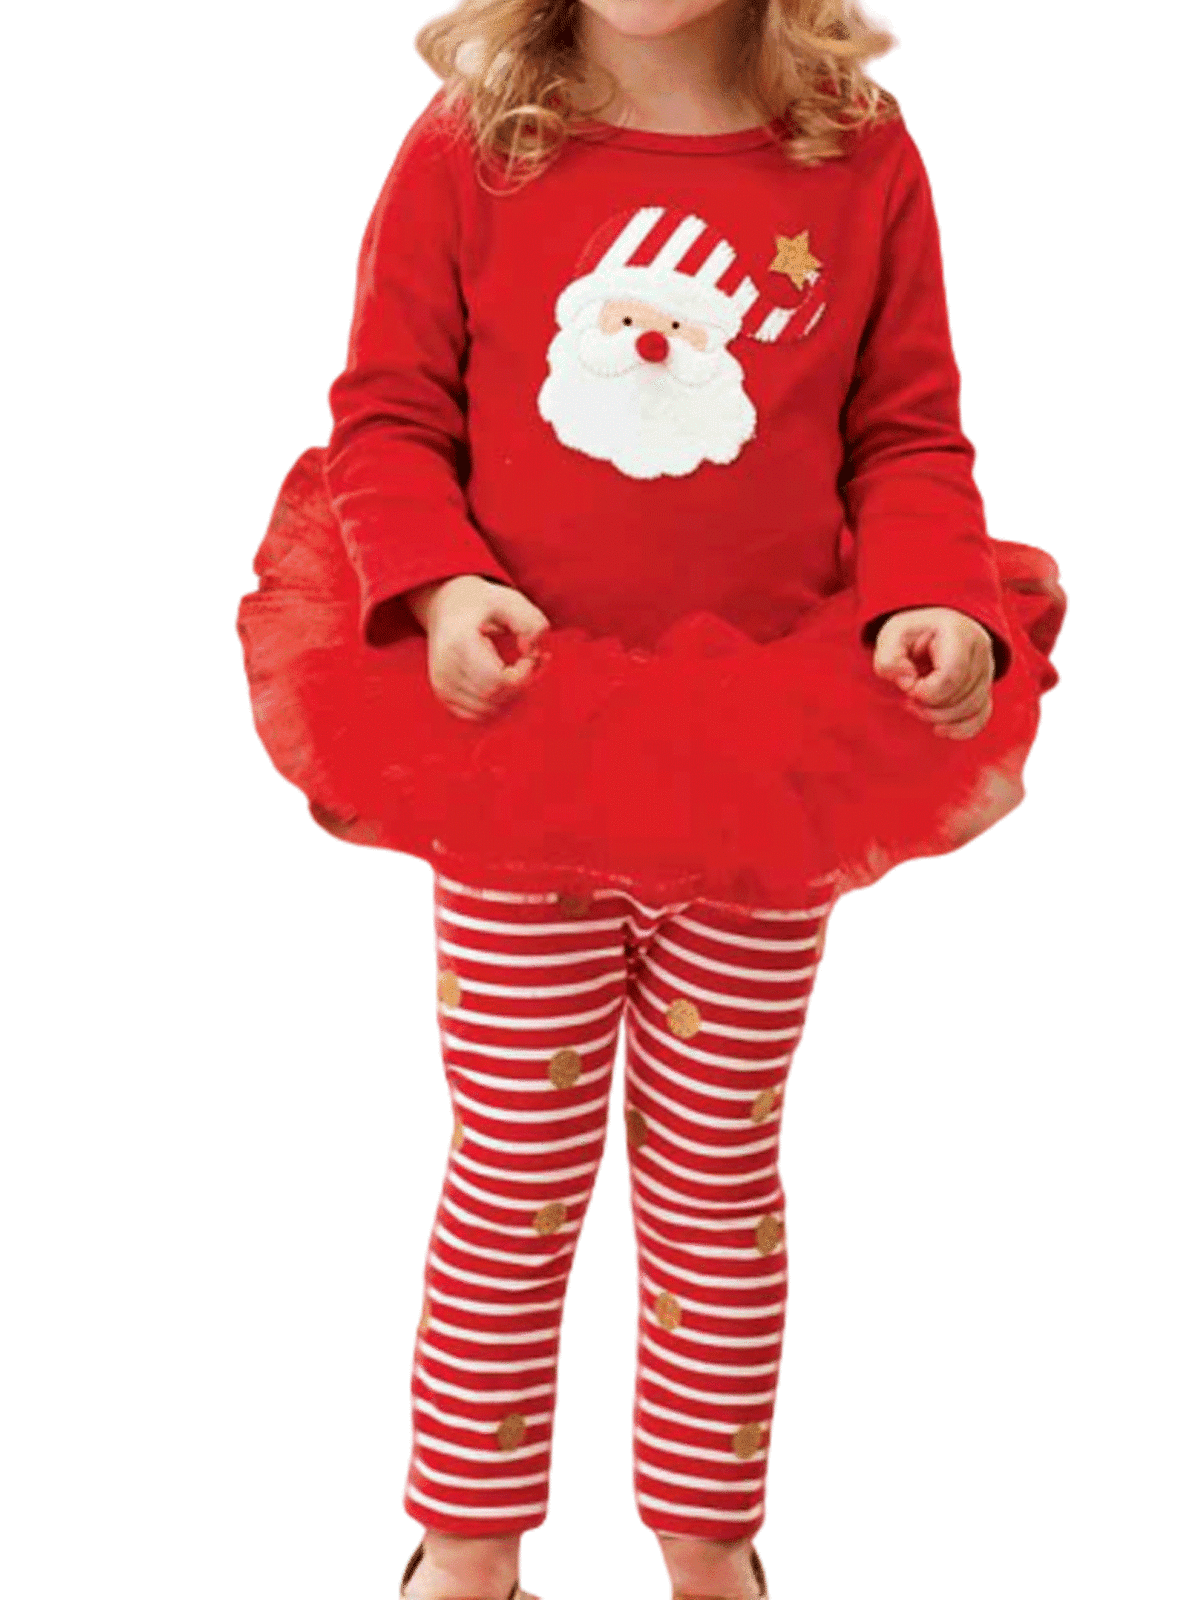 Multitrust Multitrust New Christmas X Mas Infant Baby Girls Top Dress Skirt Outfits Clothes Gift Set Walmart Com Walmart Com